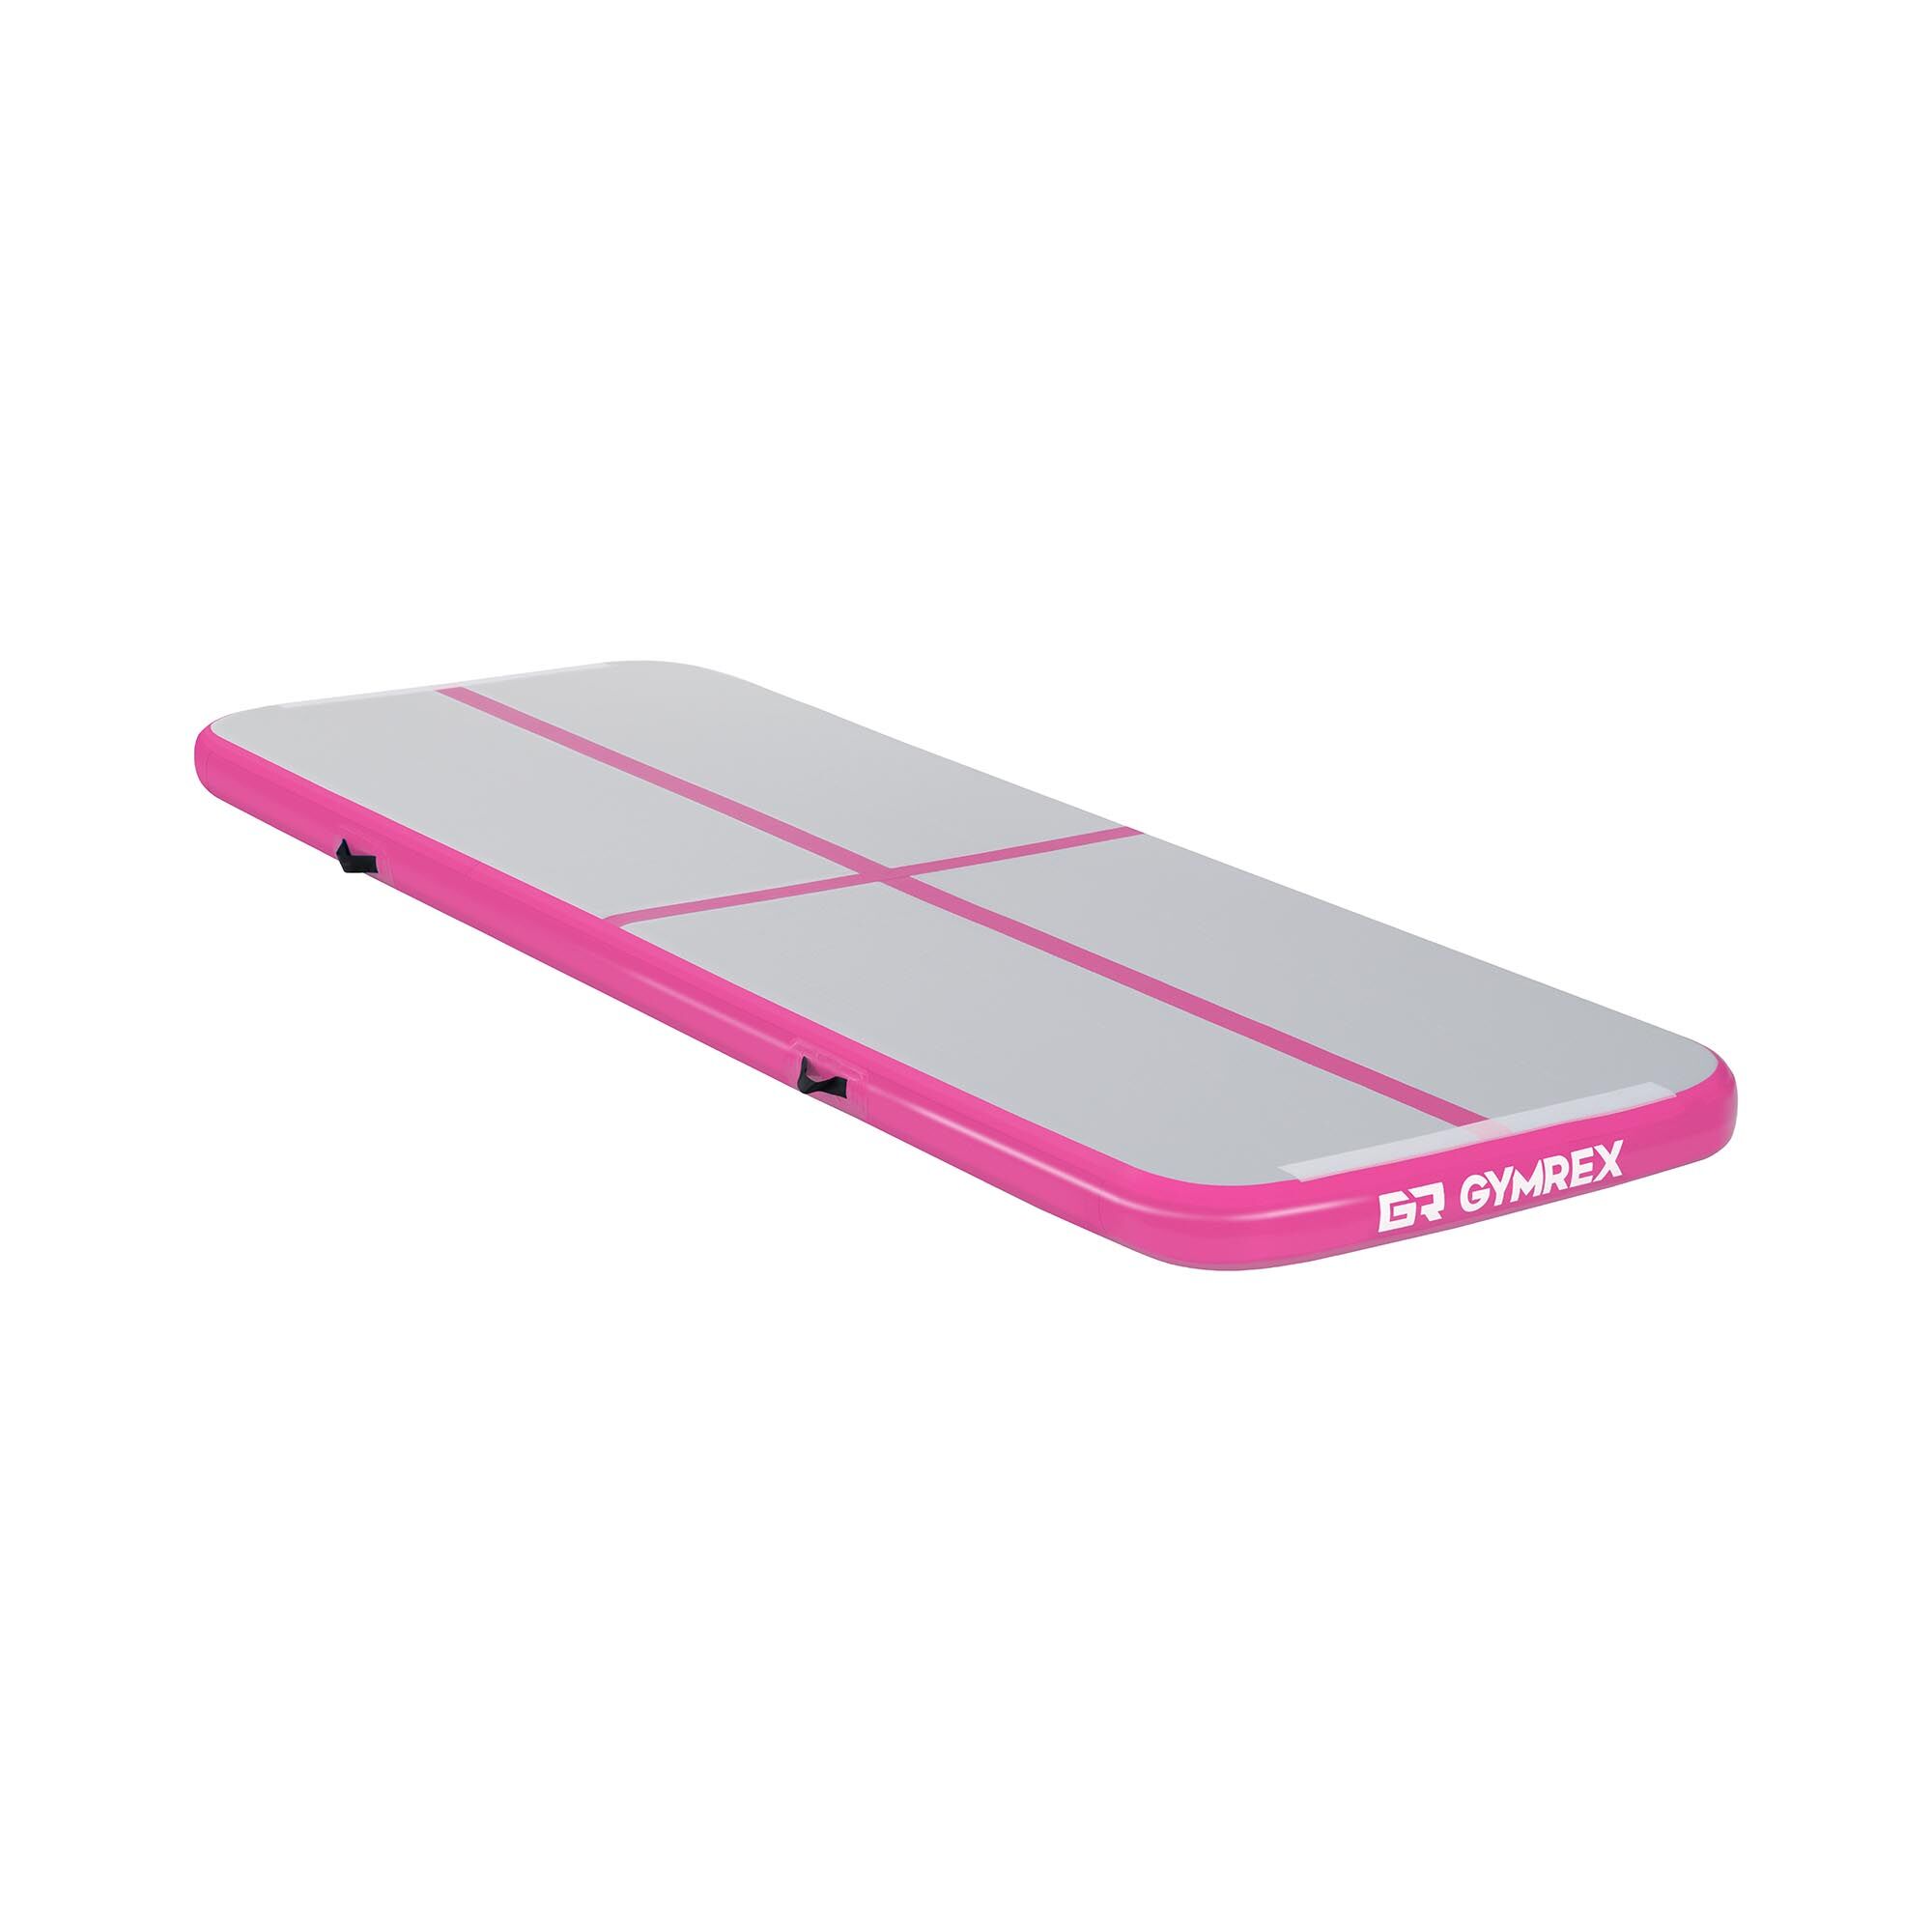 Gymrex Aufblasbare Turnmatte - Airtrack - 300 x 100 x 10 cm - 150 kg - pink/grau 10230106